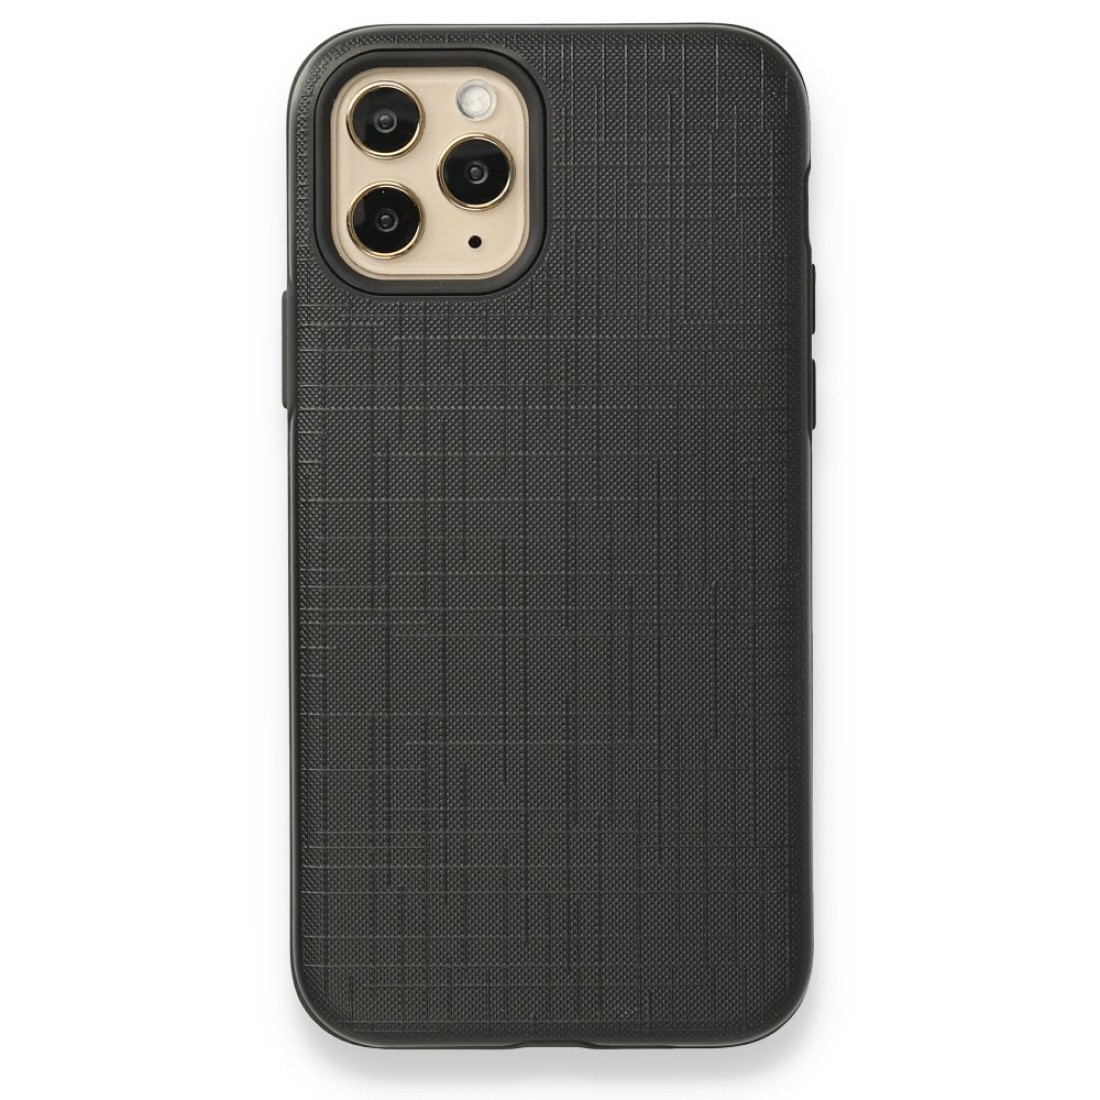 Apple iPhone 11 Pro Kılıf YouYou Silikon Kapak - Siyah